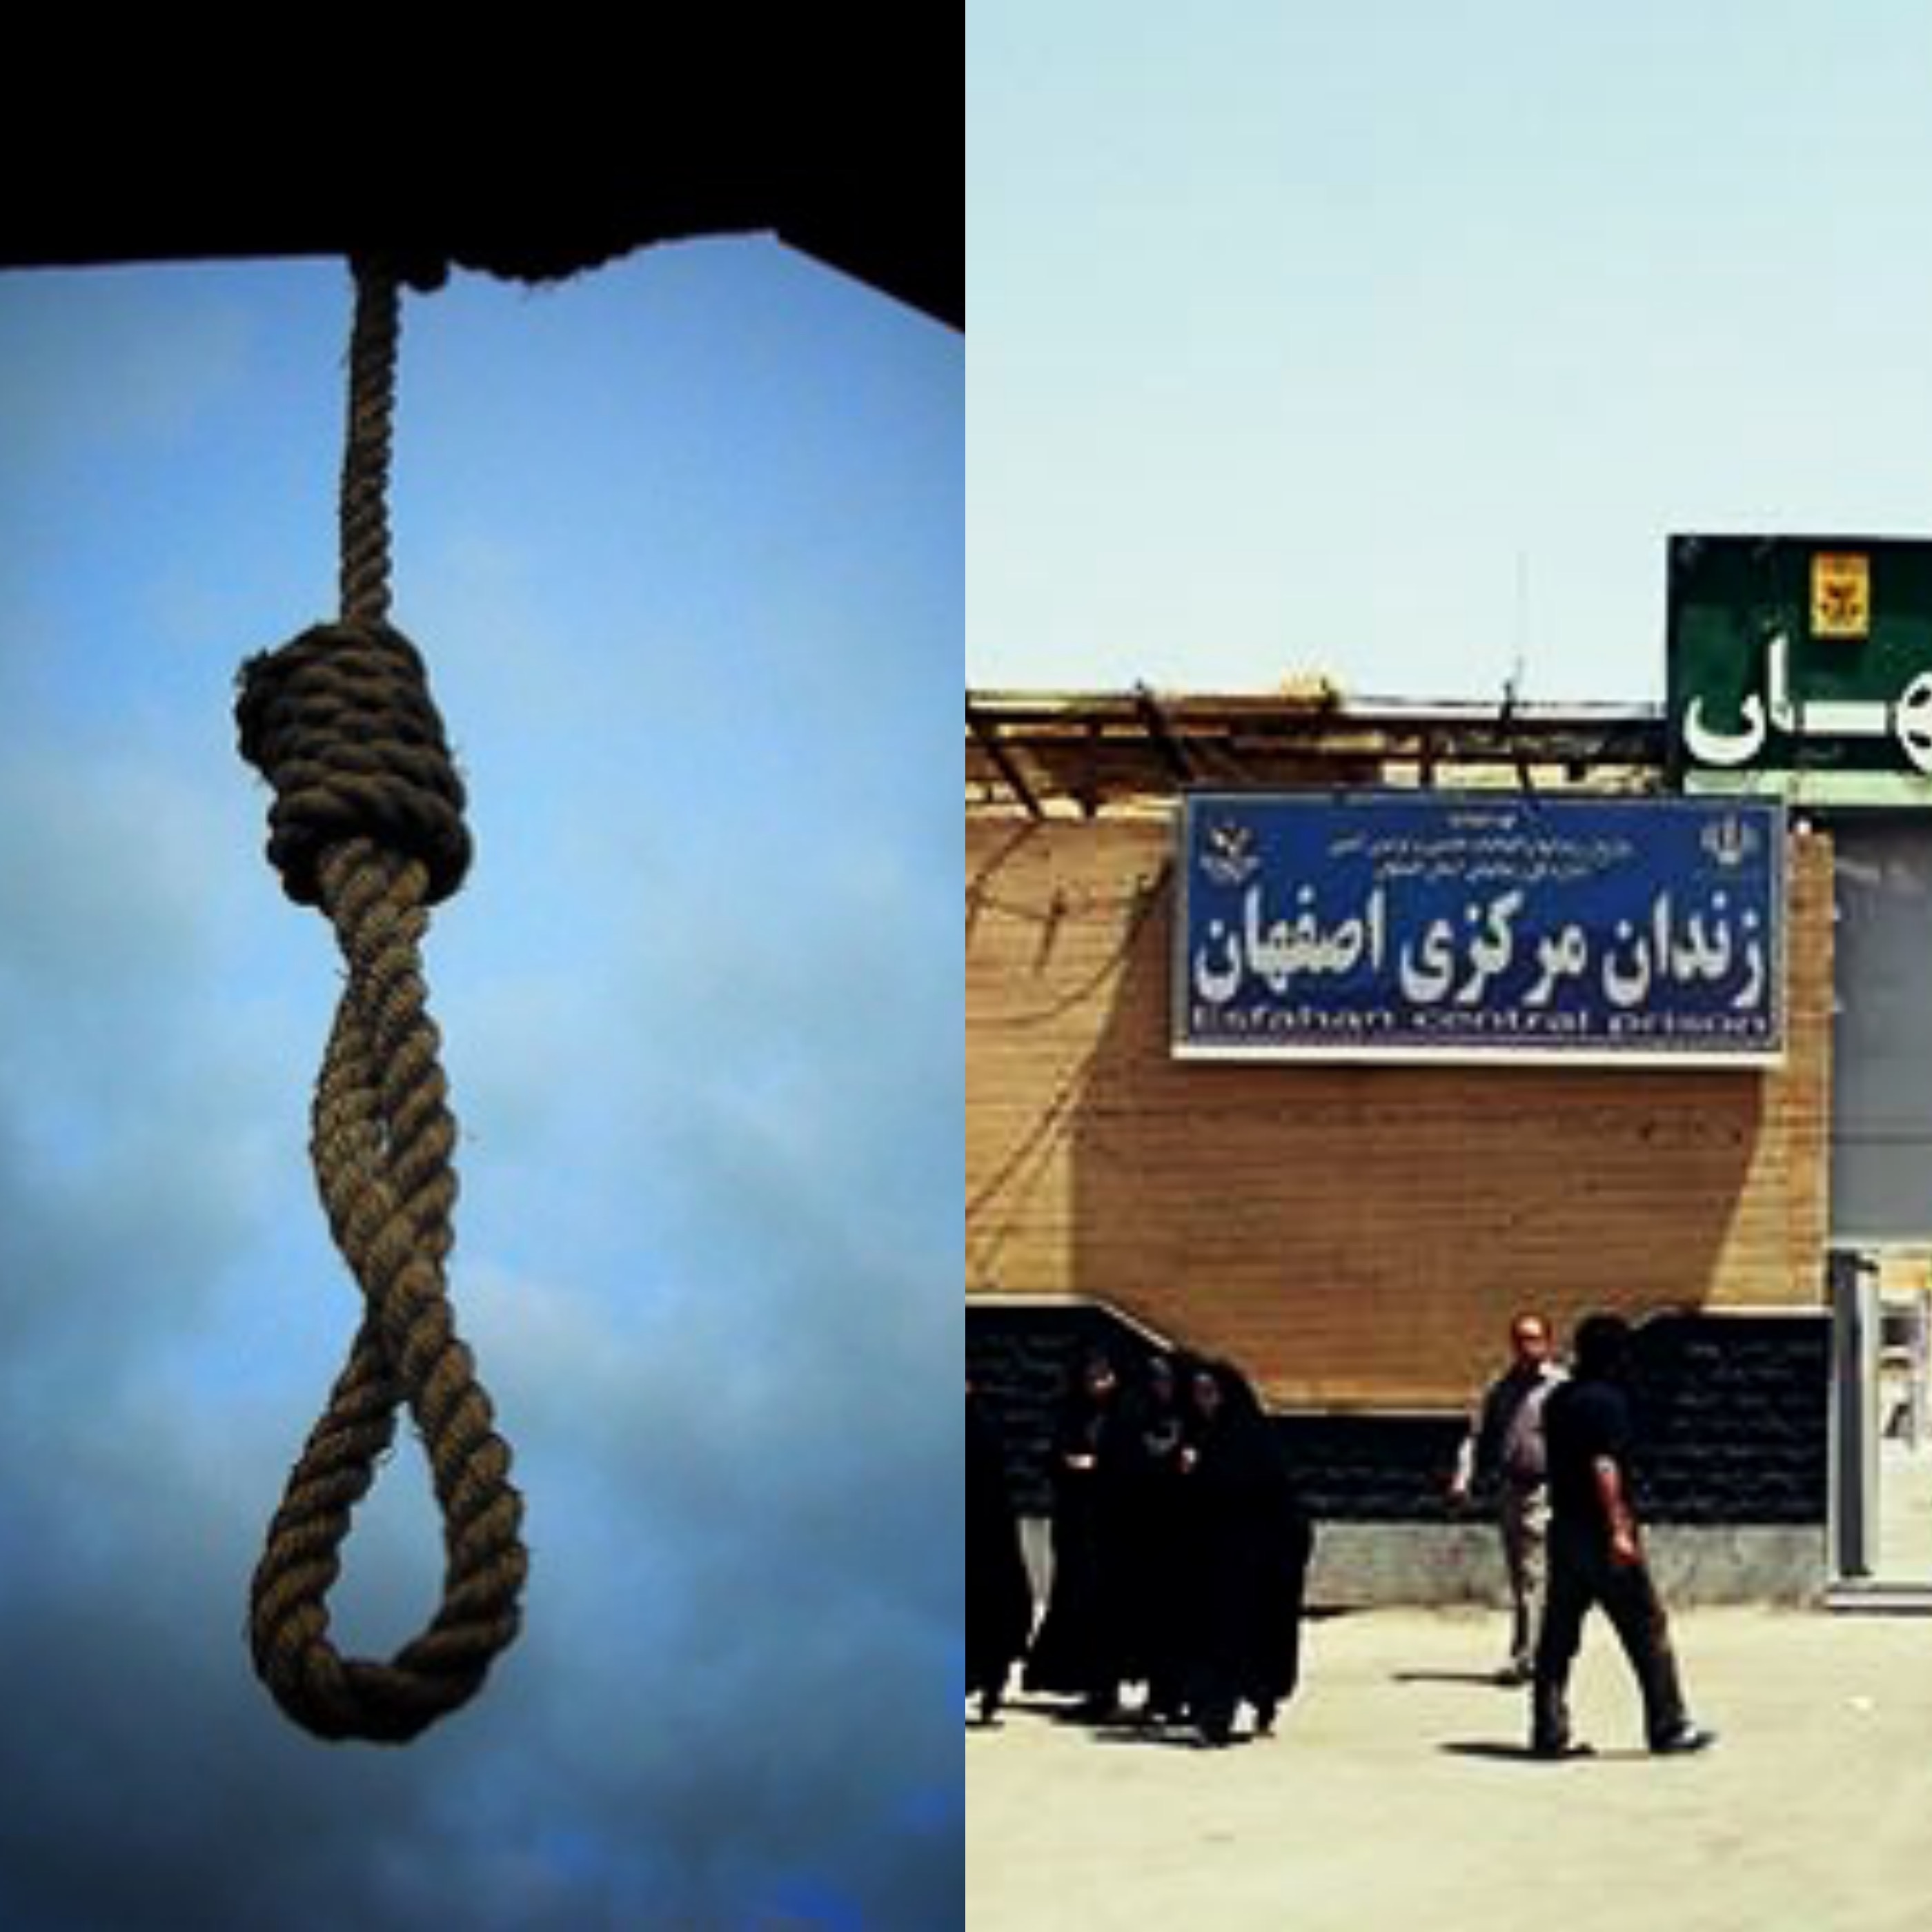 زندان مرکزی اصفهان؛ انتقال یک زندانی به سلول انفرادی جهت اجرای حکم اعدام